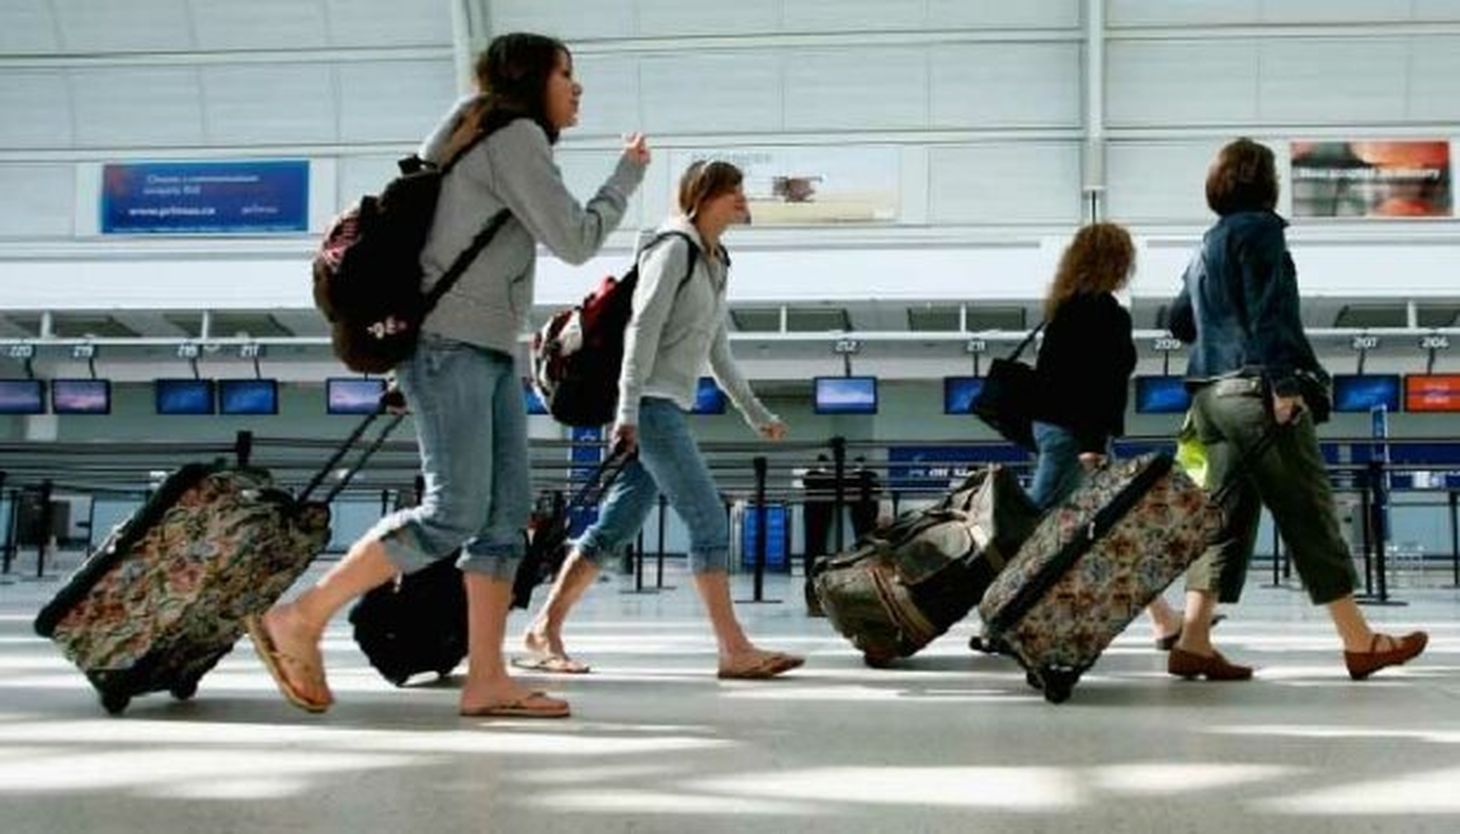 Уезжать куча. Туристы в аэропорту. Люди с чемоданами в аэропорту. Путешественник в аэропорту. Отдыхающие в аэропорту.